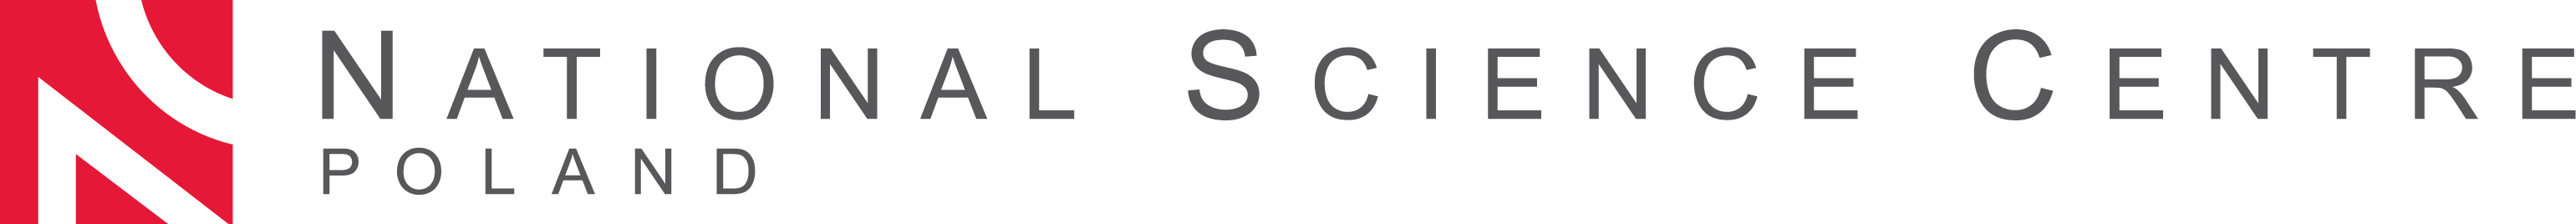 NCN logotype